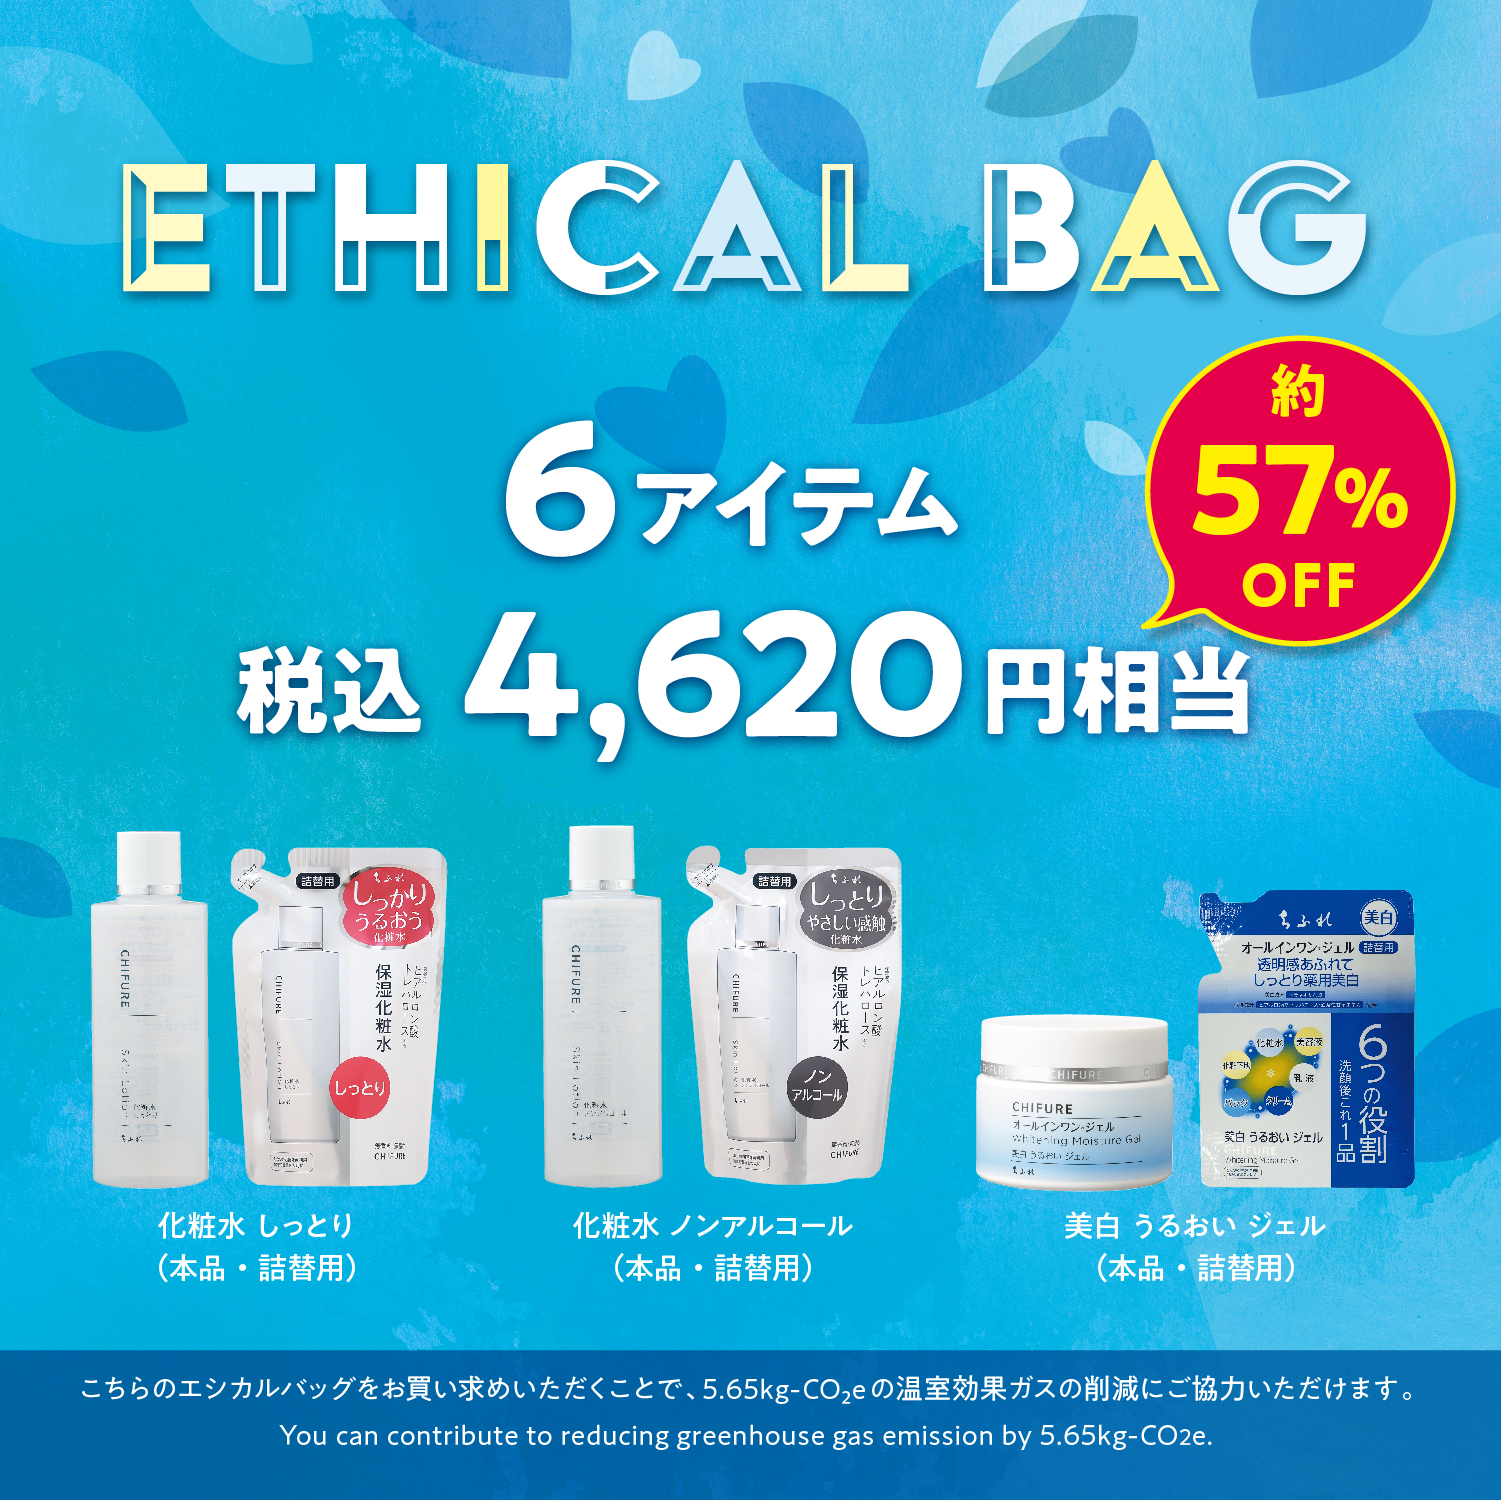 新商品「ちふれ エシカルバッグ 24A」発売のお知らせ